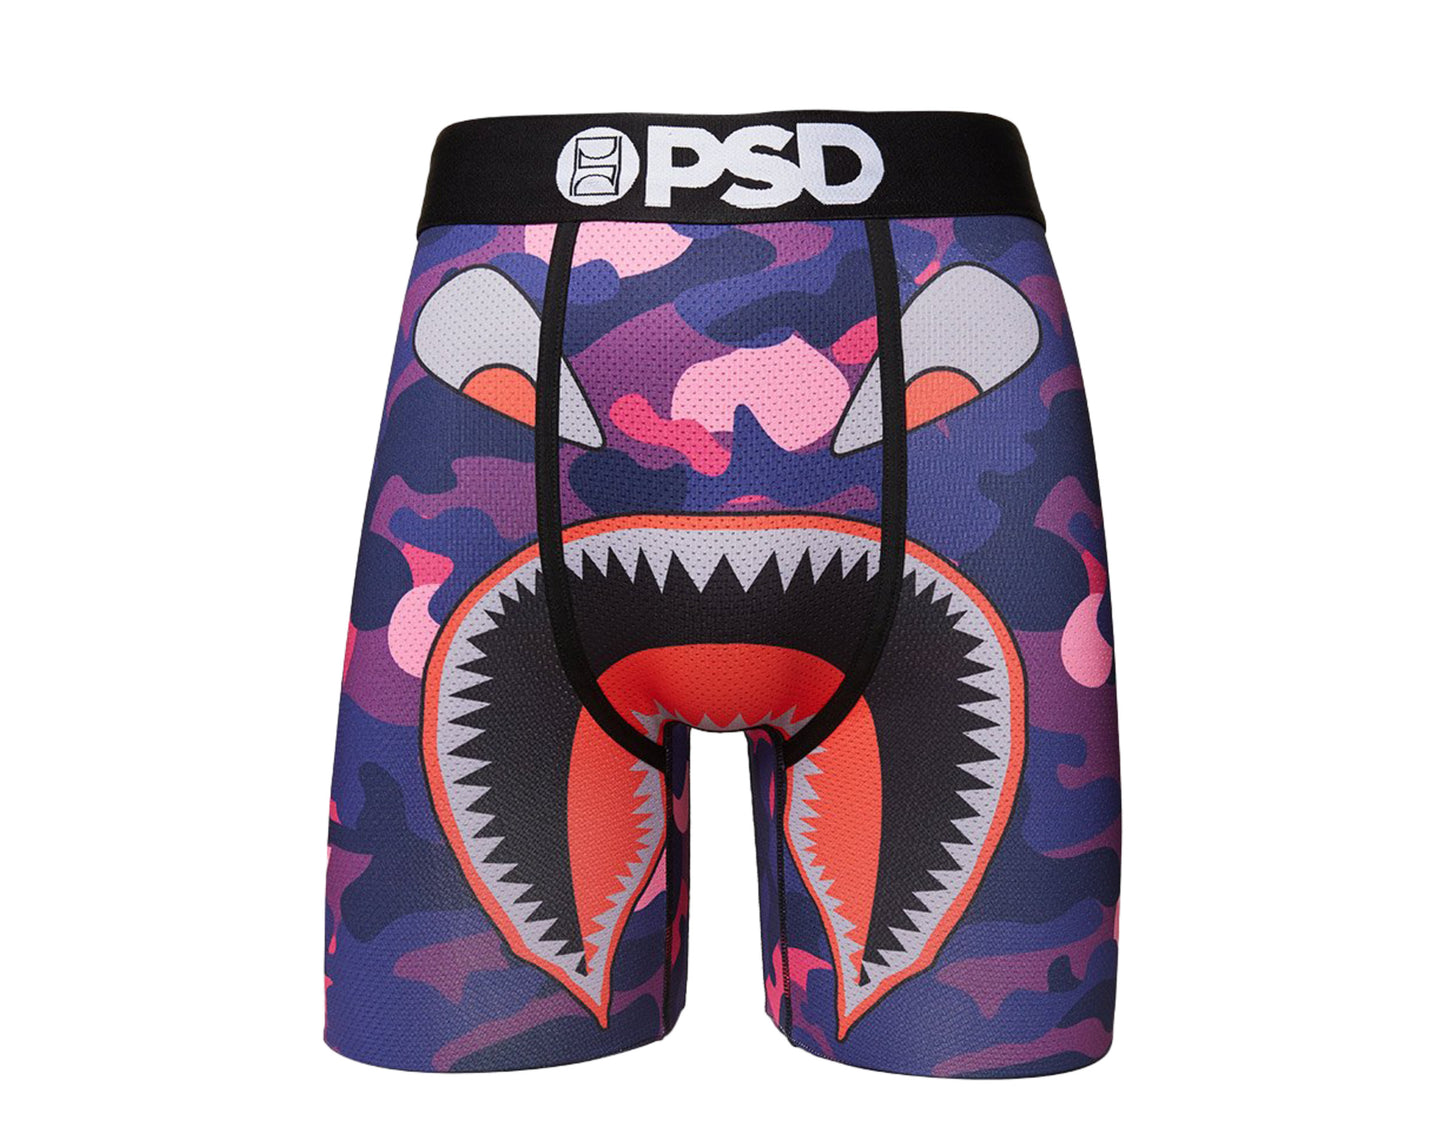 PSD Purple Warface Boxer Briefs Men's Underwear